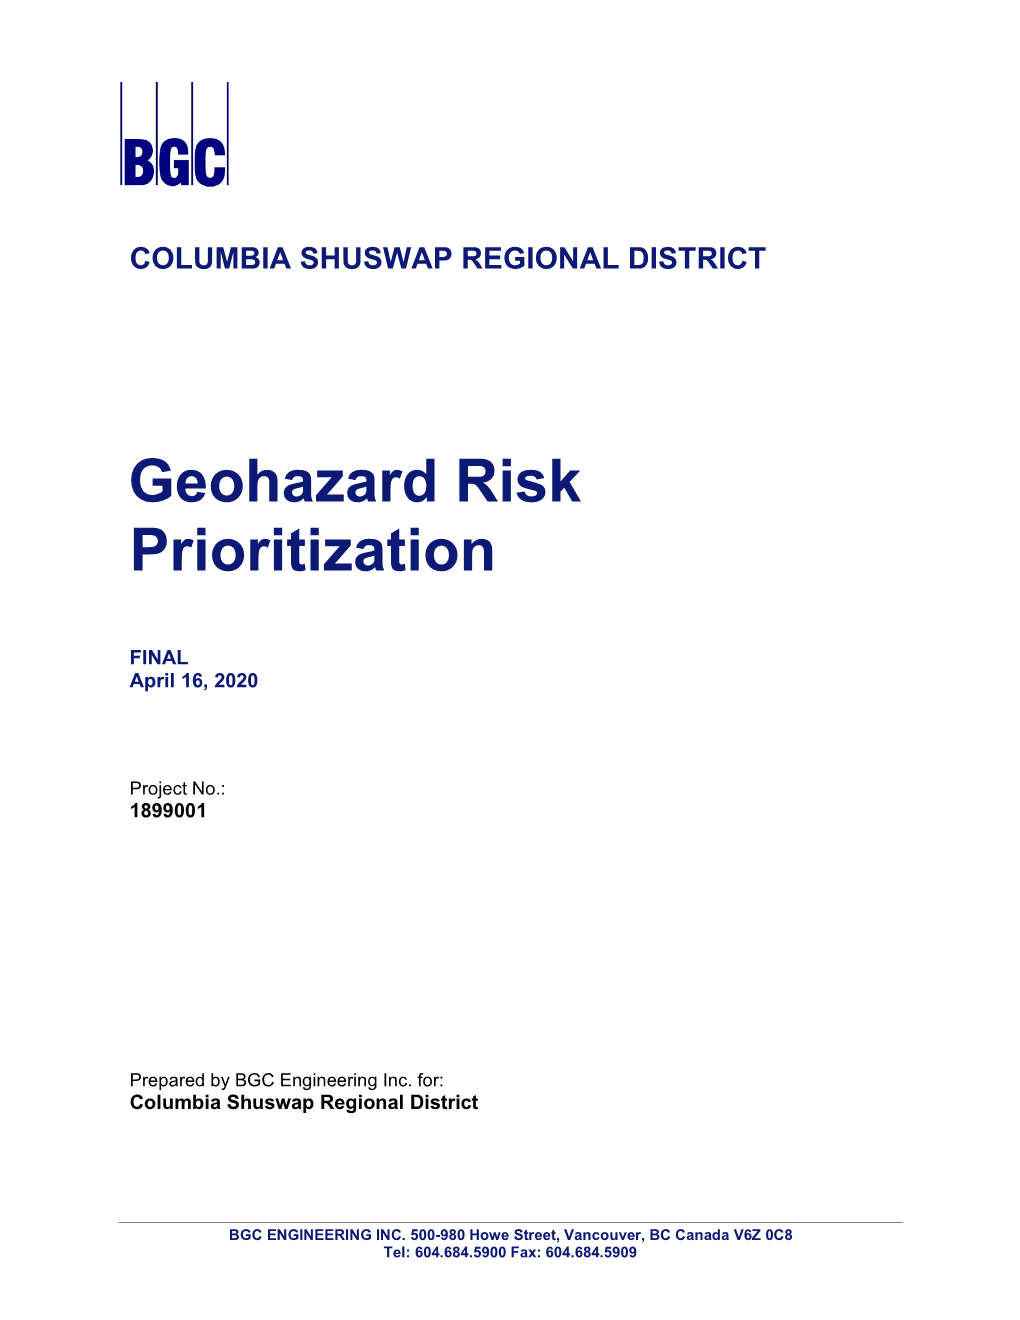 Geohazard Risk Prioritization